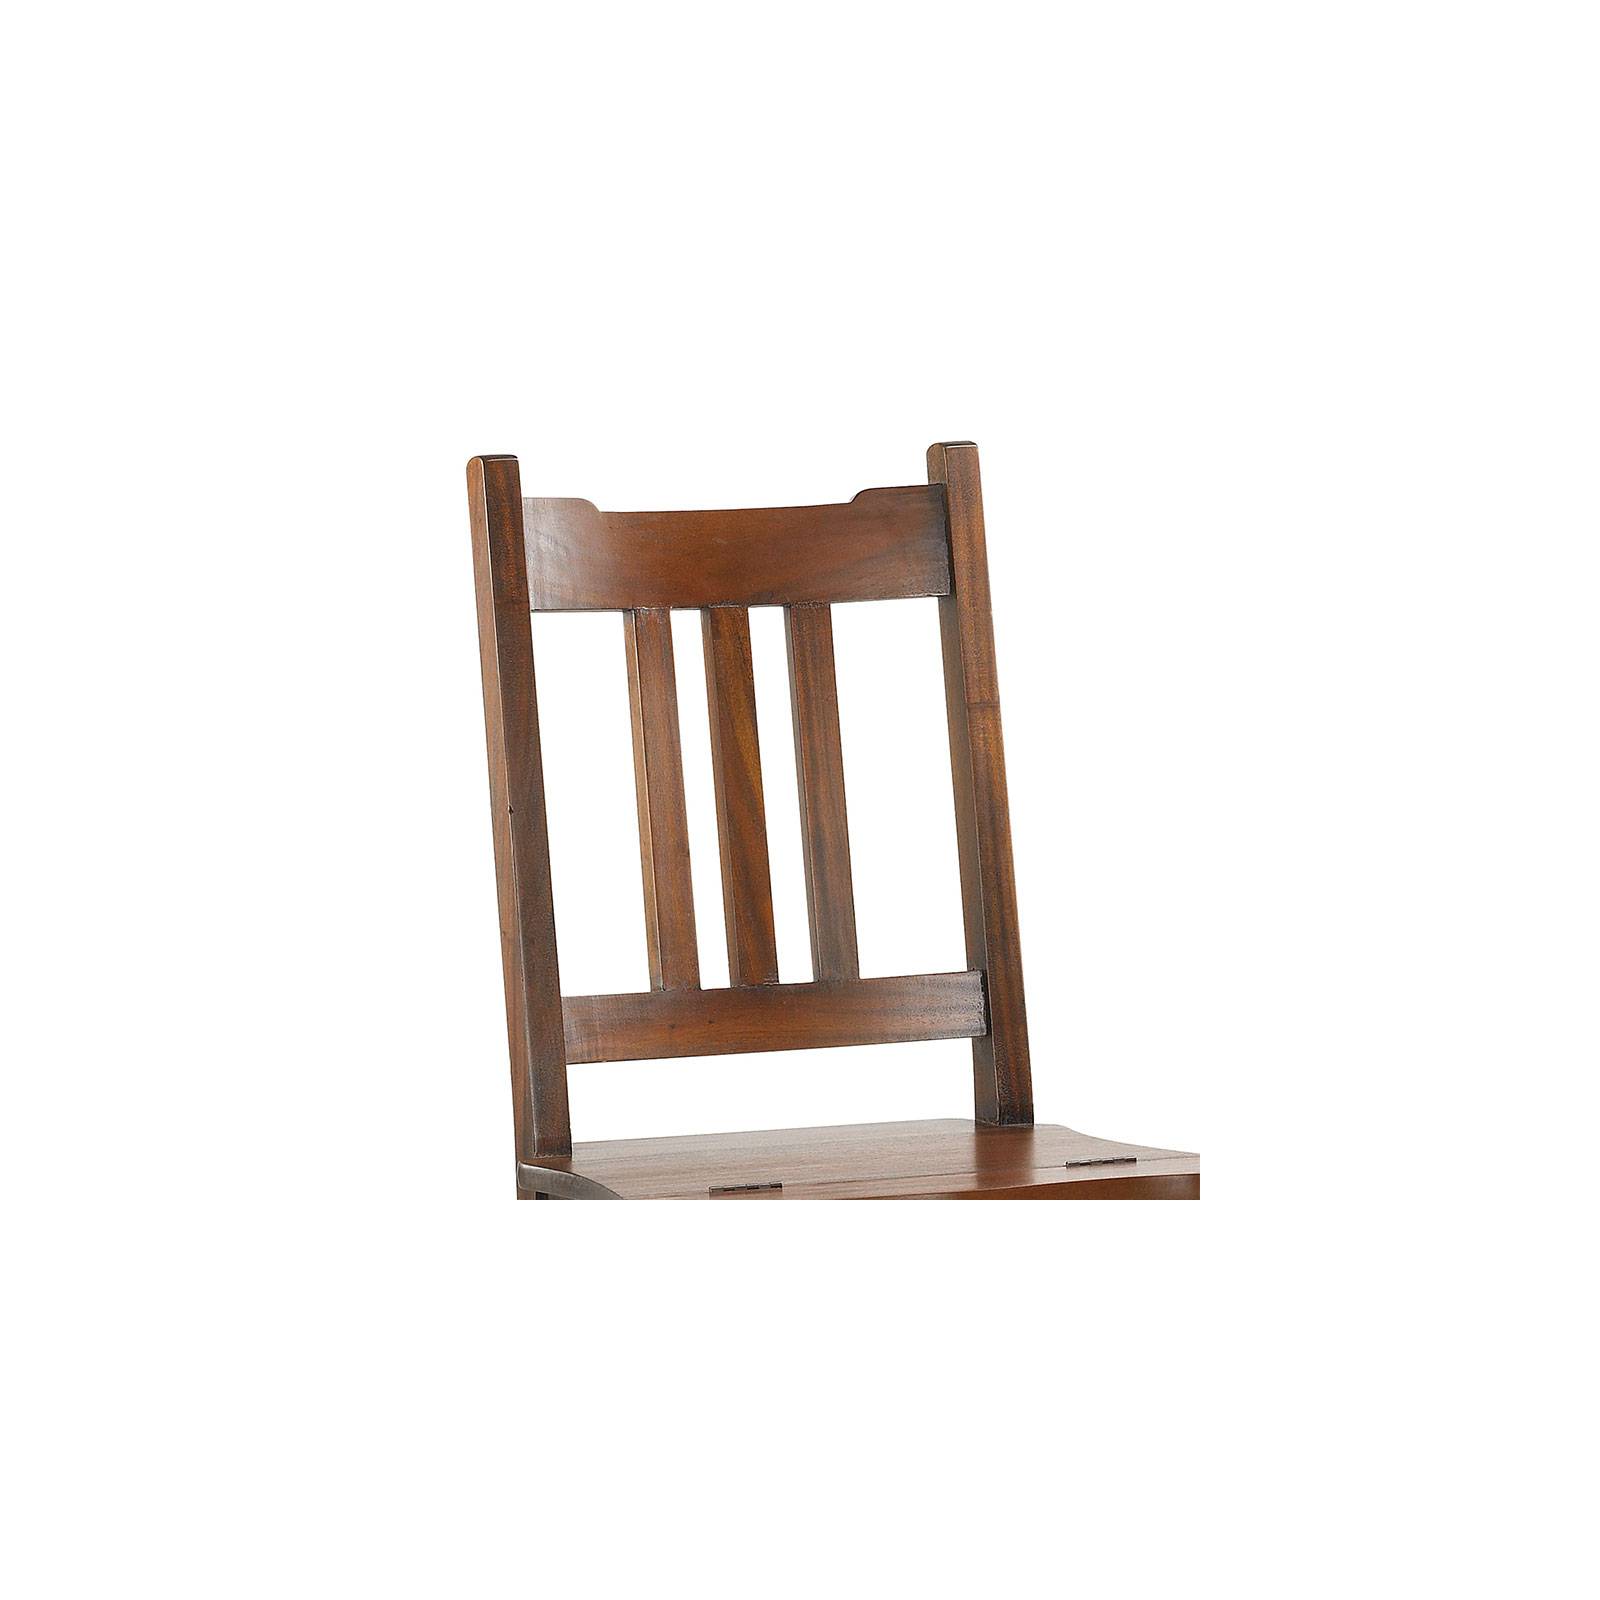 Chaise escabeau Colonial Acajou Massif - chaise en bois ethnique